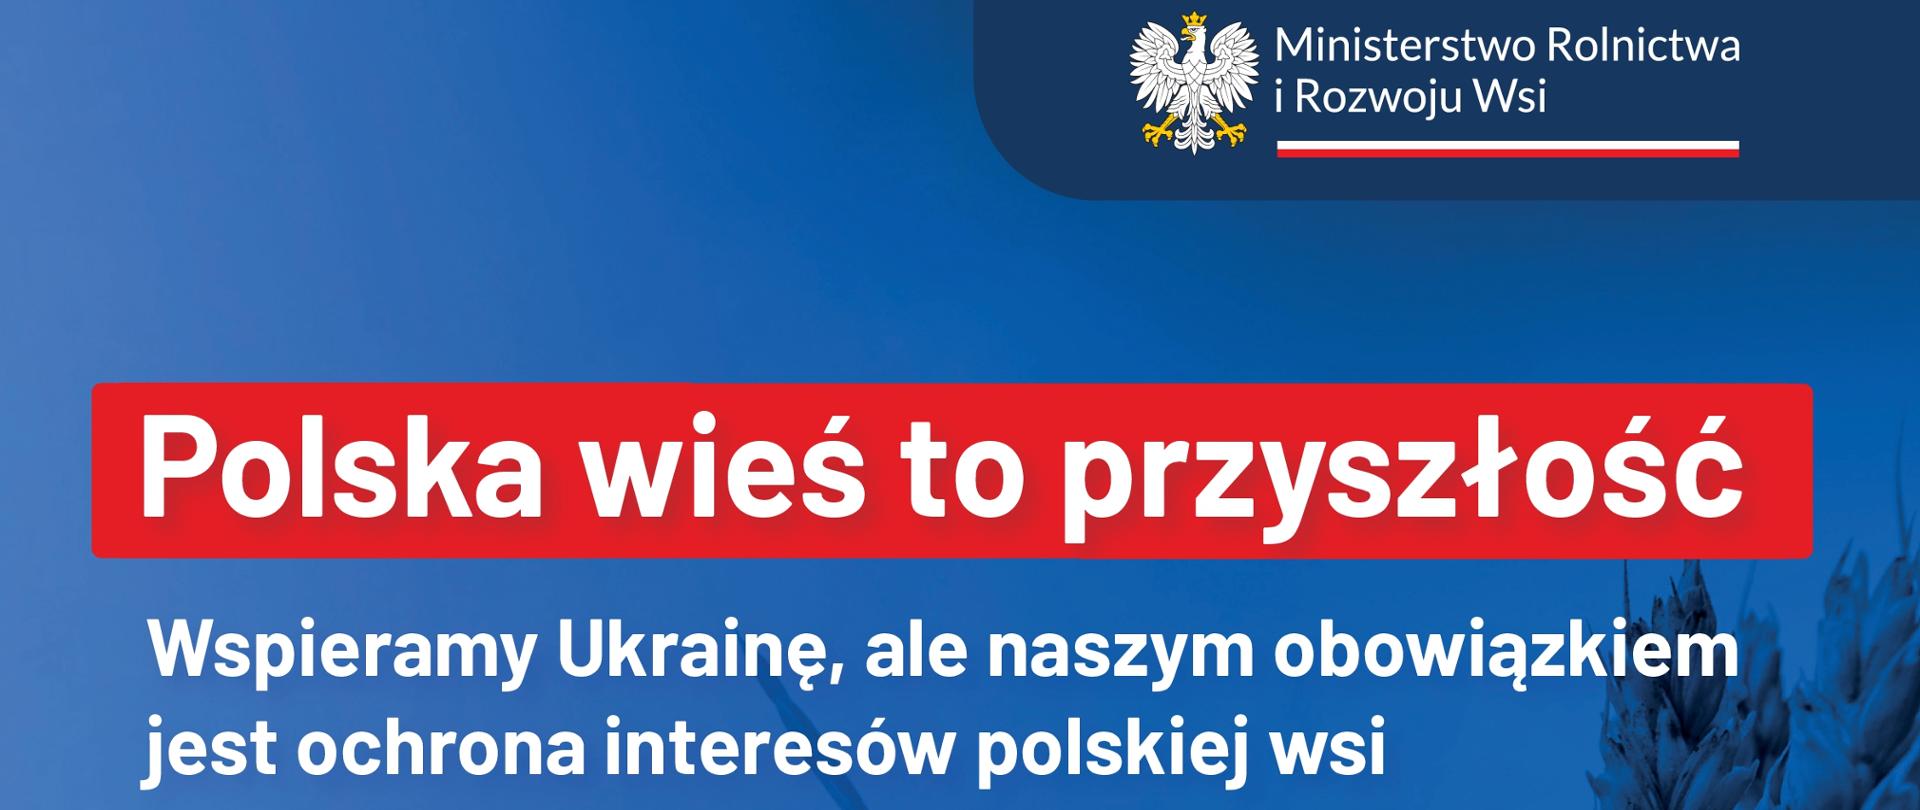 Polska wieś to przyszłość
Wspieramy Ukrainę, ale naszym obowiązkiem jest ochrona interesów polskiej wsi - plakat